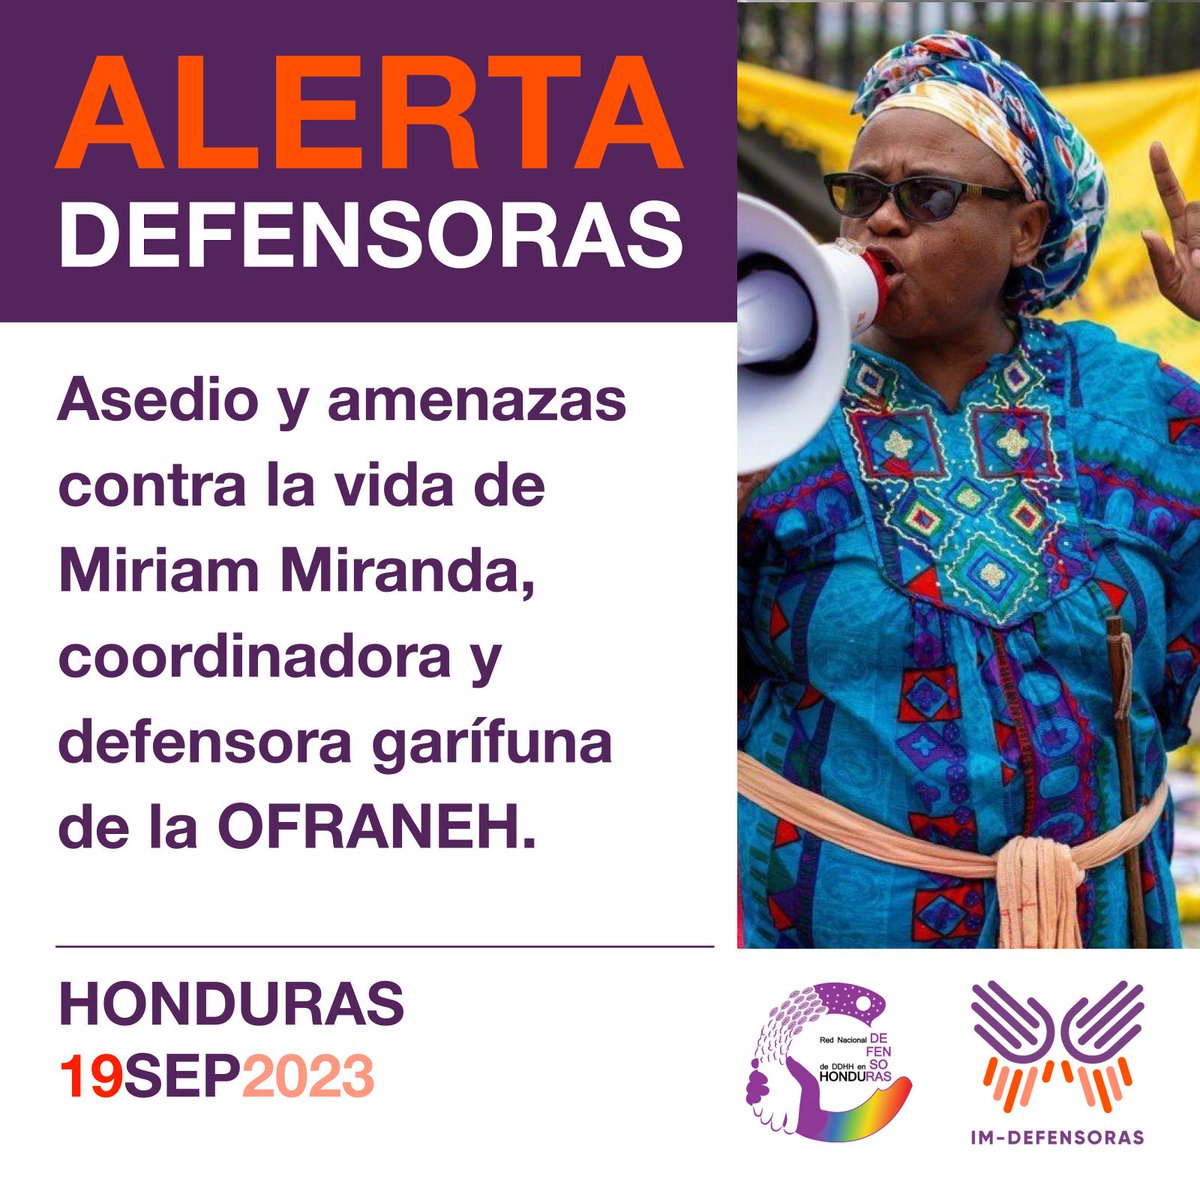 📢⚠️🚨#AlertaDefensoras HONDURAS / Asedio y amenazas contra la vida de Miriam Miranda, coordinadora y defensora garífuna de la OFRANEH. 📌Más información➡️bit.ly/3PI6tji